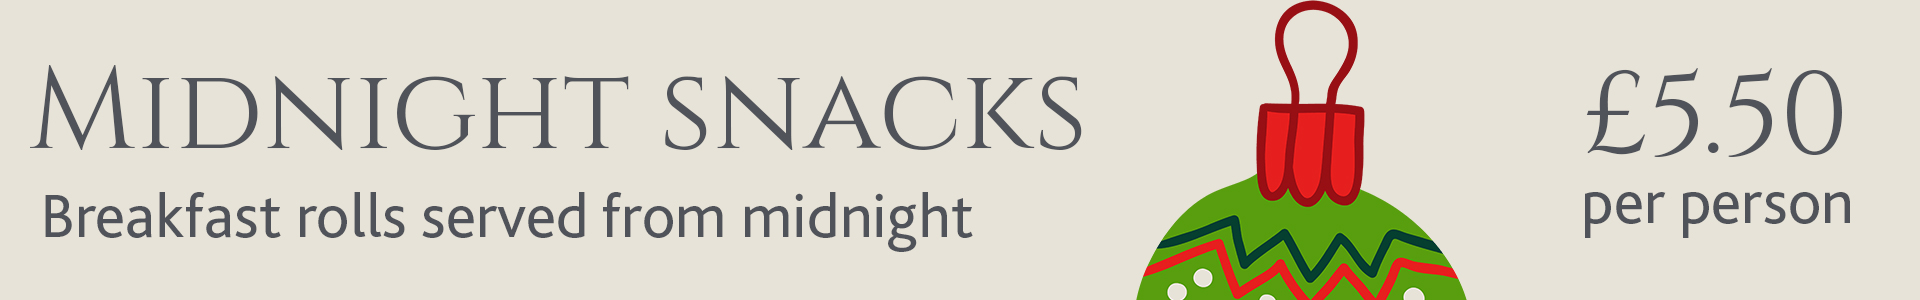 Midnight-snacks